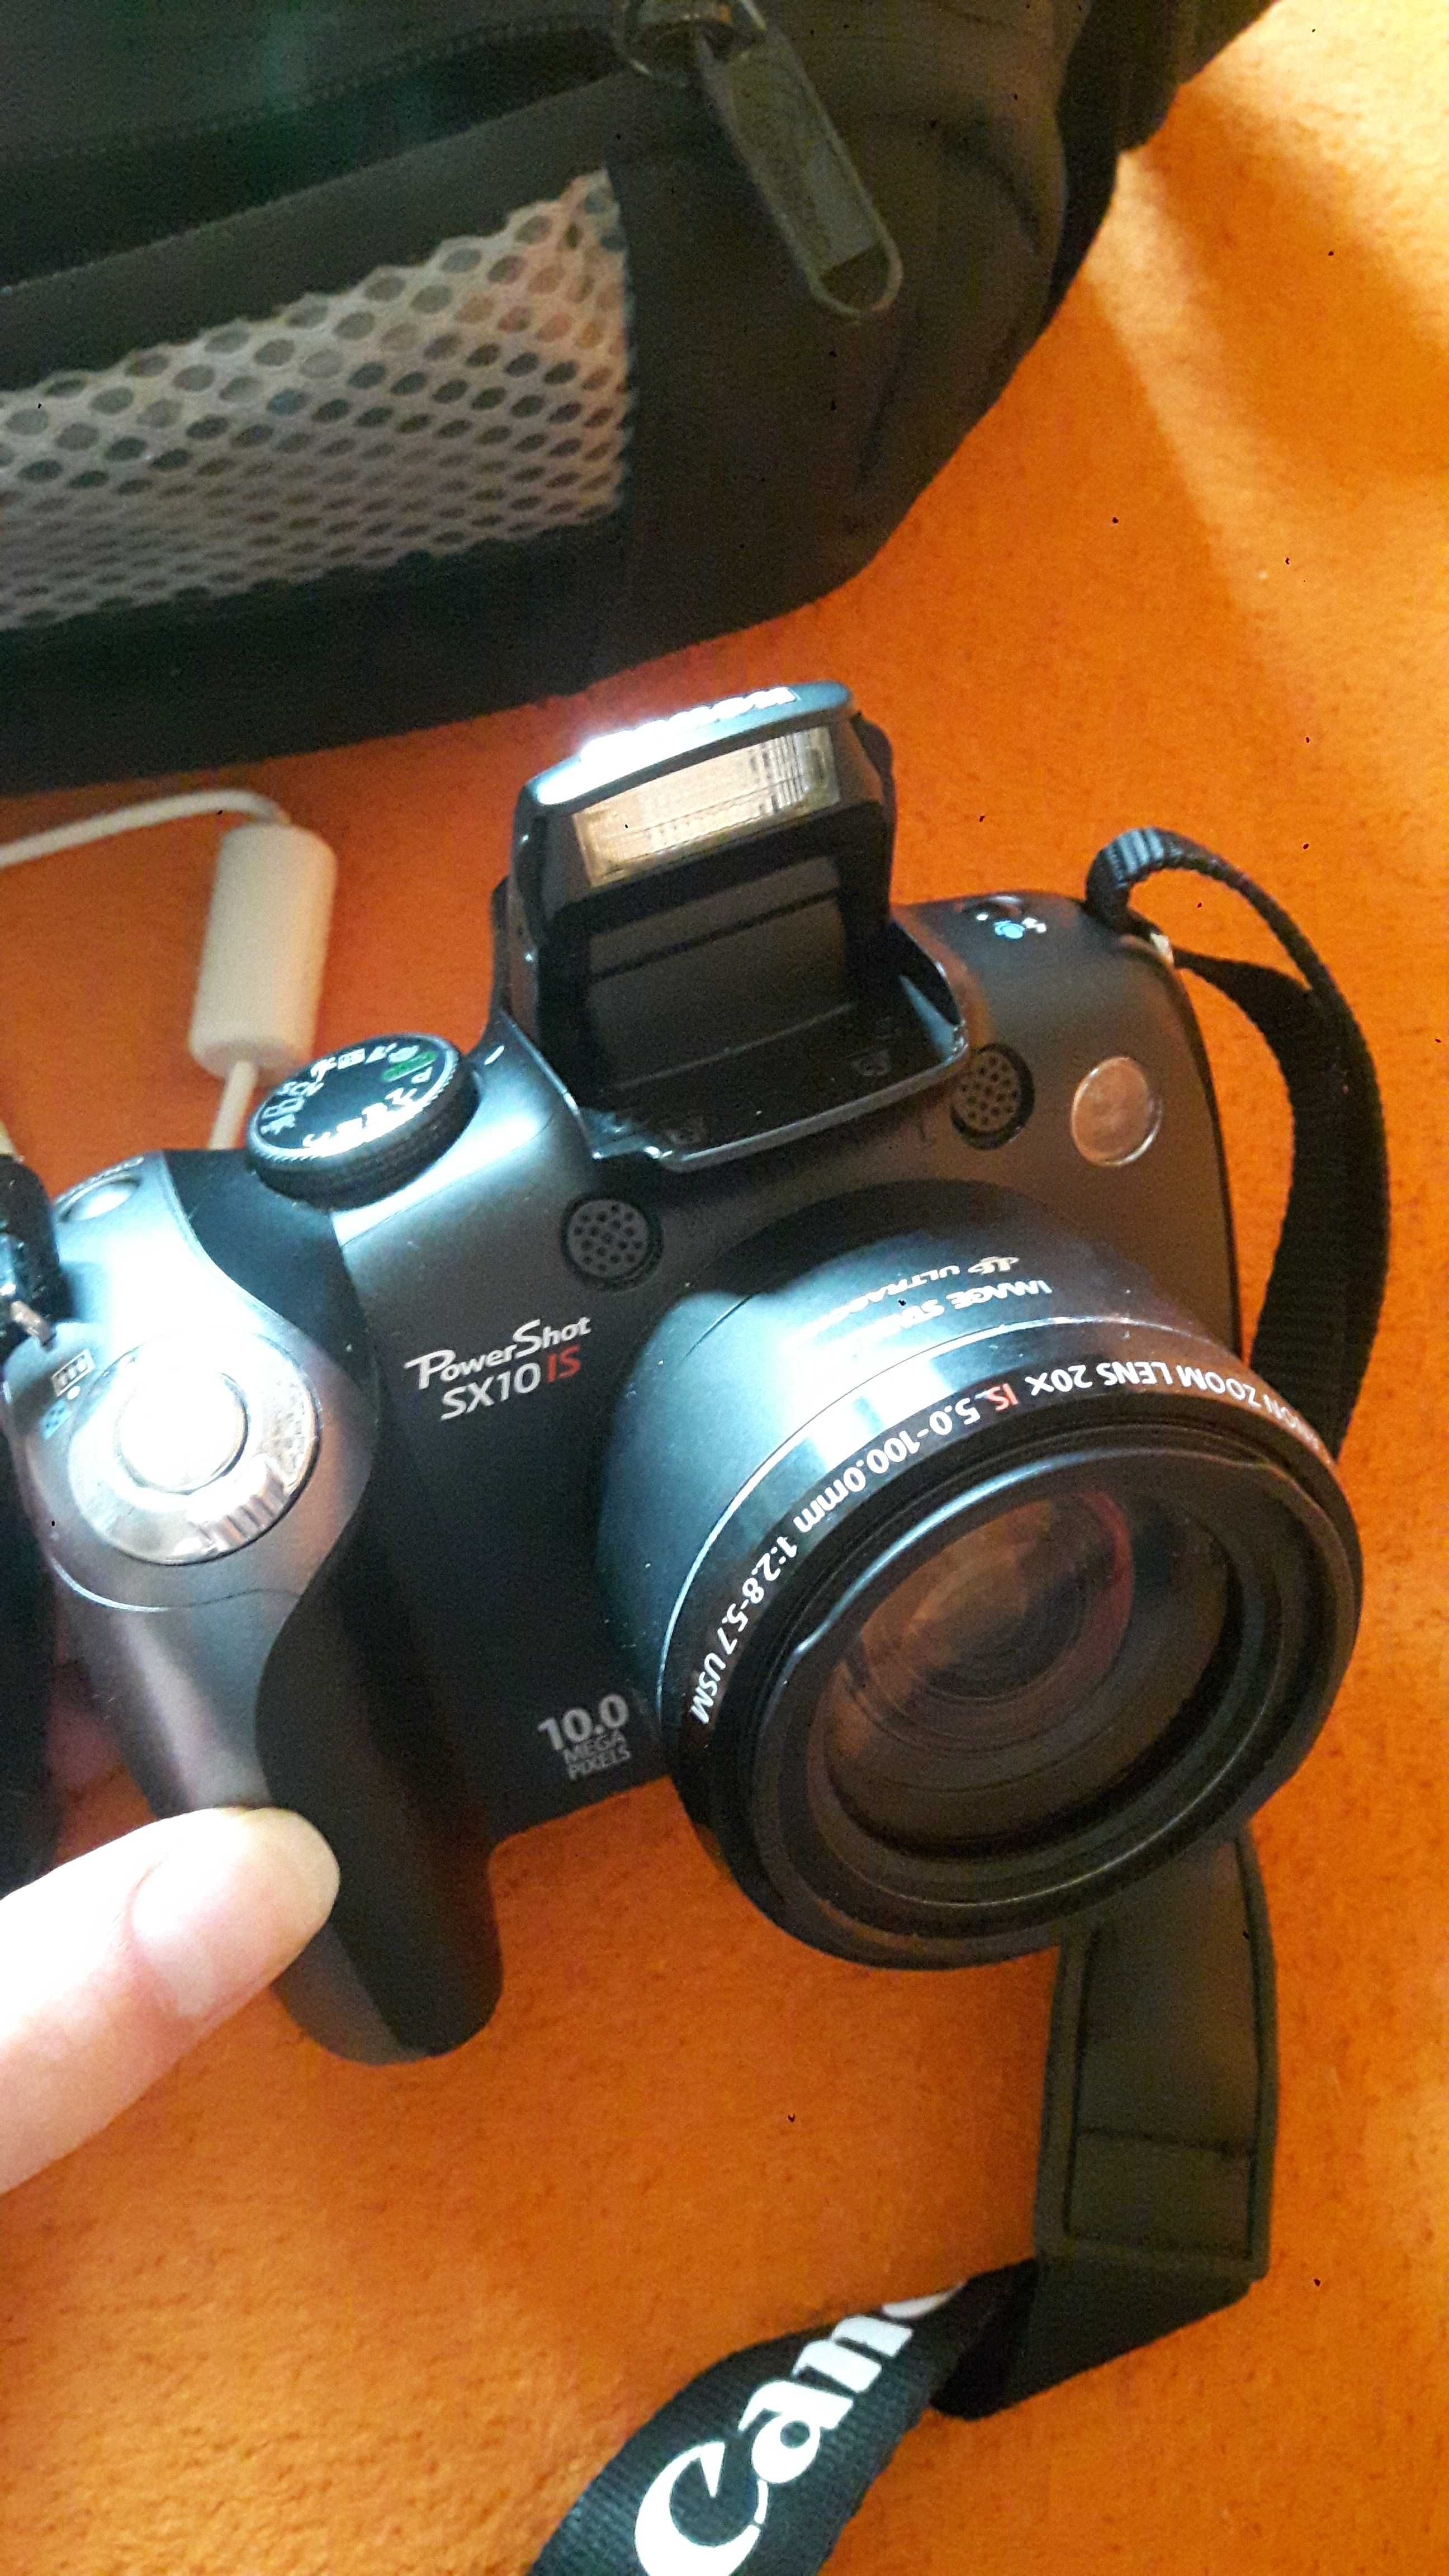 Aparat Canon PowerShot SX10IS Zadbany w pokrowcu